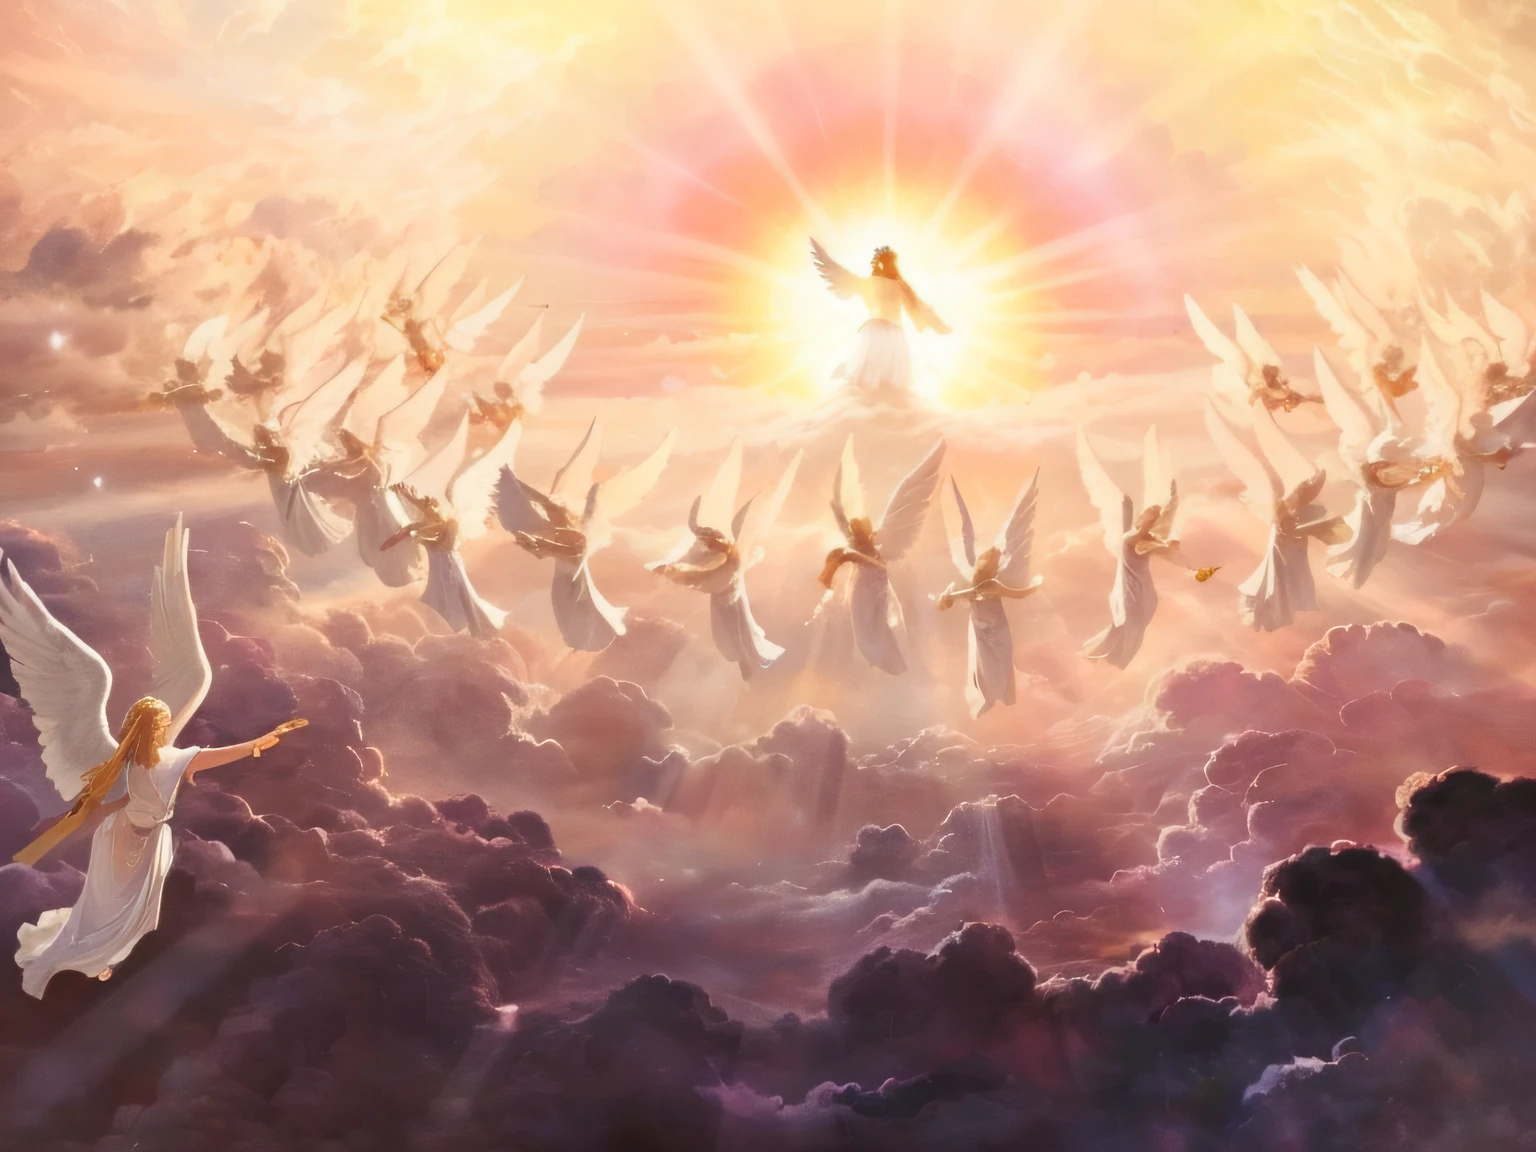 peinture d&#39;anges volant dans le ciel avec un soleil qui brille derrière eux, des anges dans le ciel, Enlèvement céleste, Deuxième venue, entre les nuages célestes éclairés par le soleil, Paradis!!!!!!!!, L’enlèvement, she is arriving Paradis, Grille-pain volants dans le ciel, anges protégeant un homme en prière, the gates of Paradis, royaume divin des dieux, représentation biblique épique